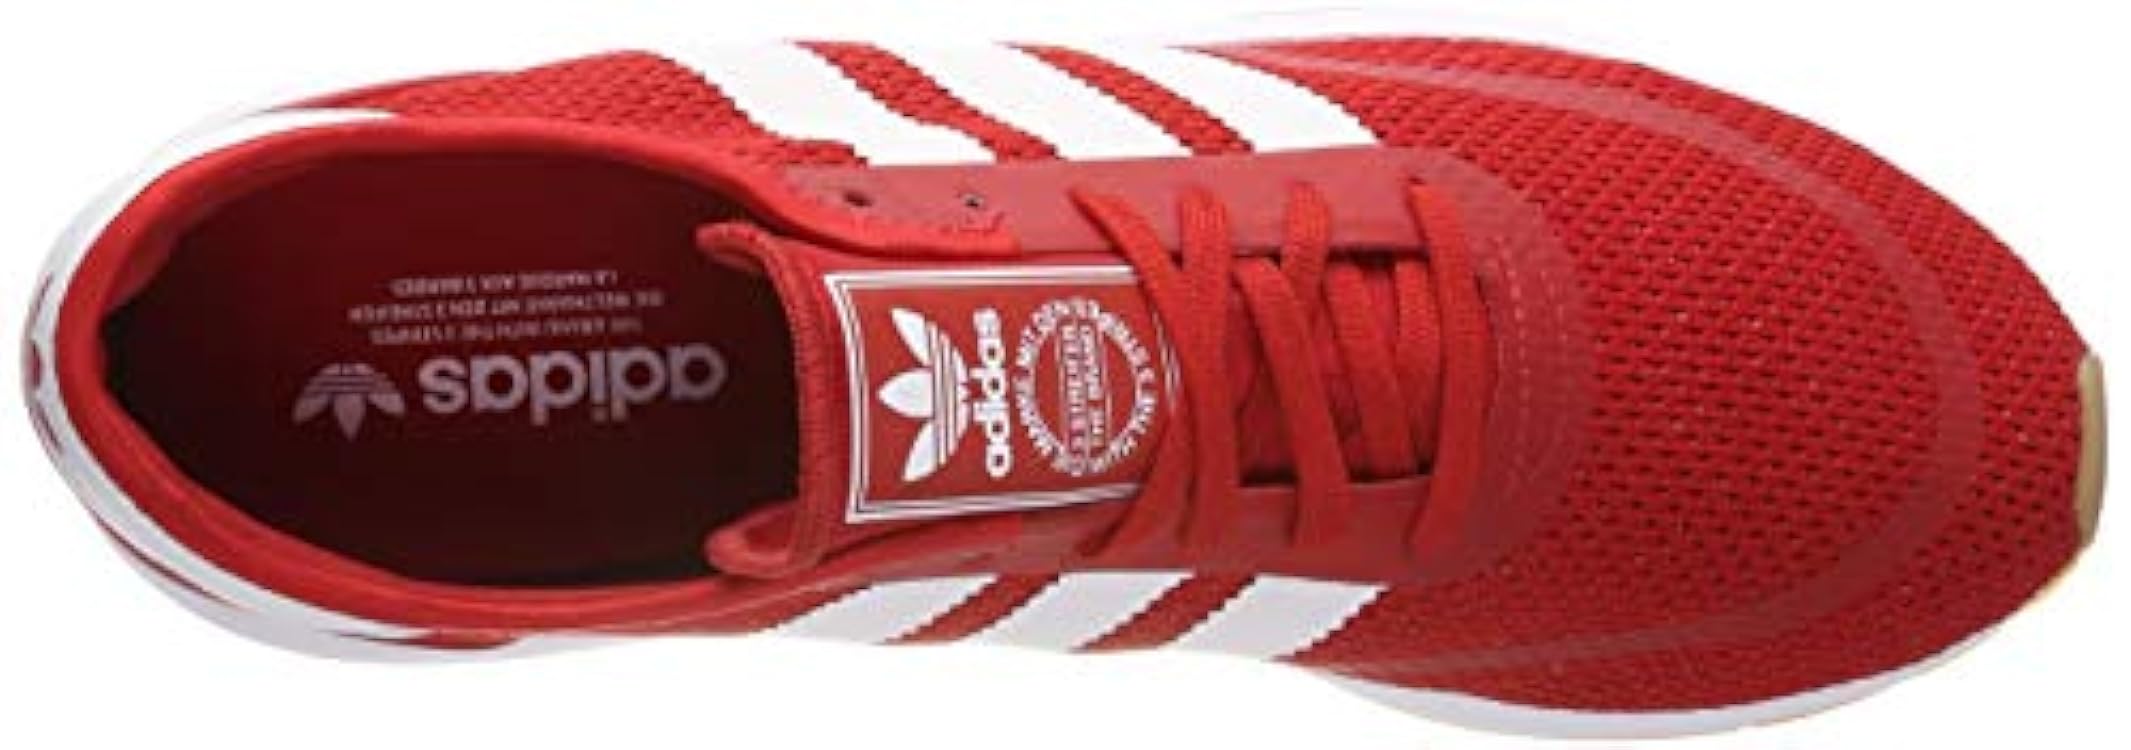 adidas N-5923, Scarpe da Ginnastica Uomo, Rosso (Scarlet/Ftwr Bianco/Scarlet Gum4 / Ftwr Bianco / Gum4), 44 2/3 EU 239036502